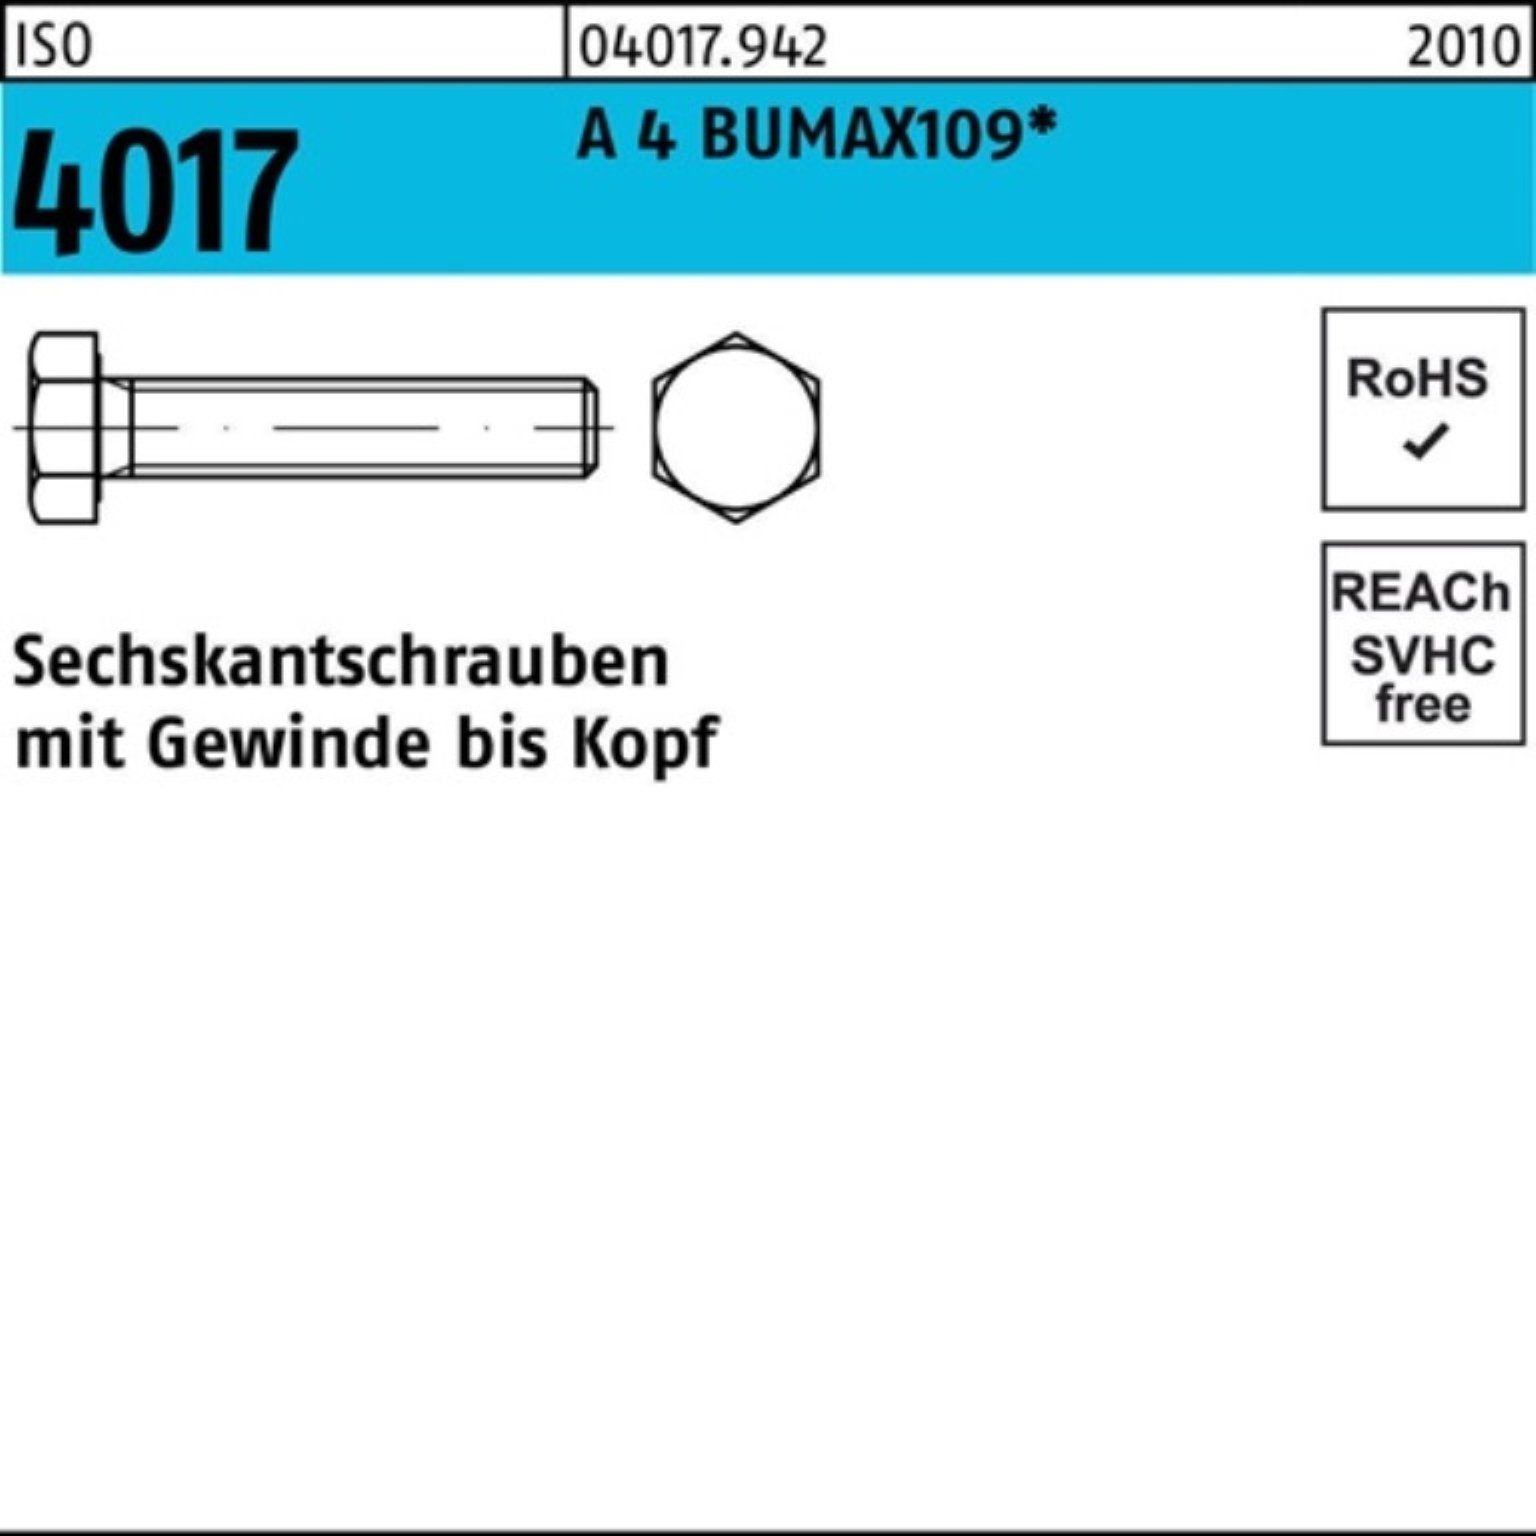 Bufab Sechskantschraube 100er M6x 100 Stüc BUMAX109 ISO 25 Sechskantschraube 4 4017 VG Pack A